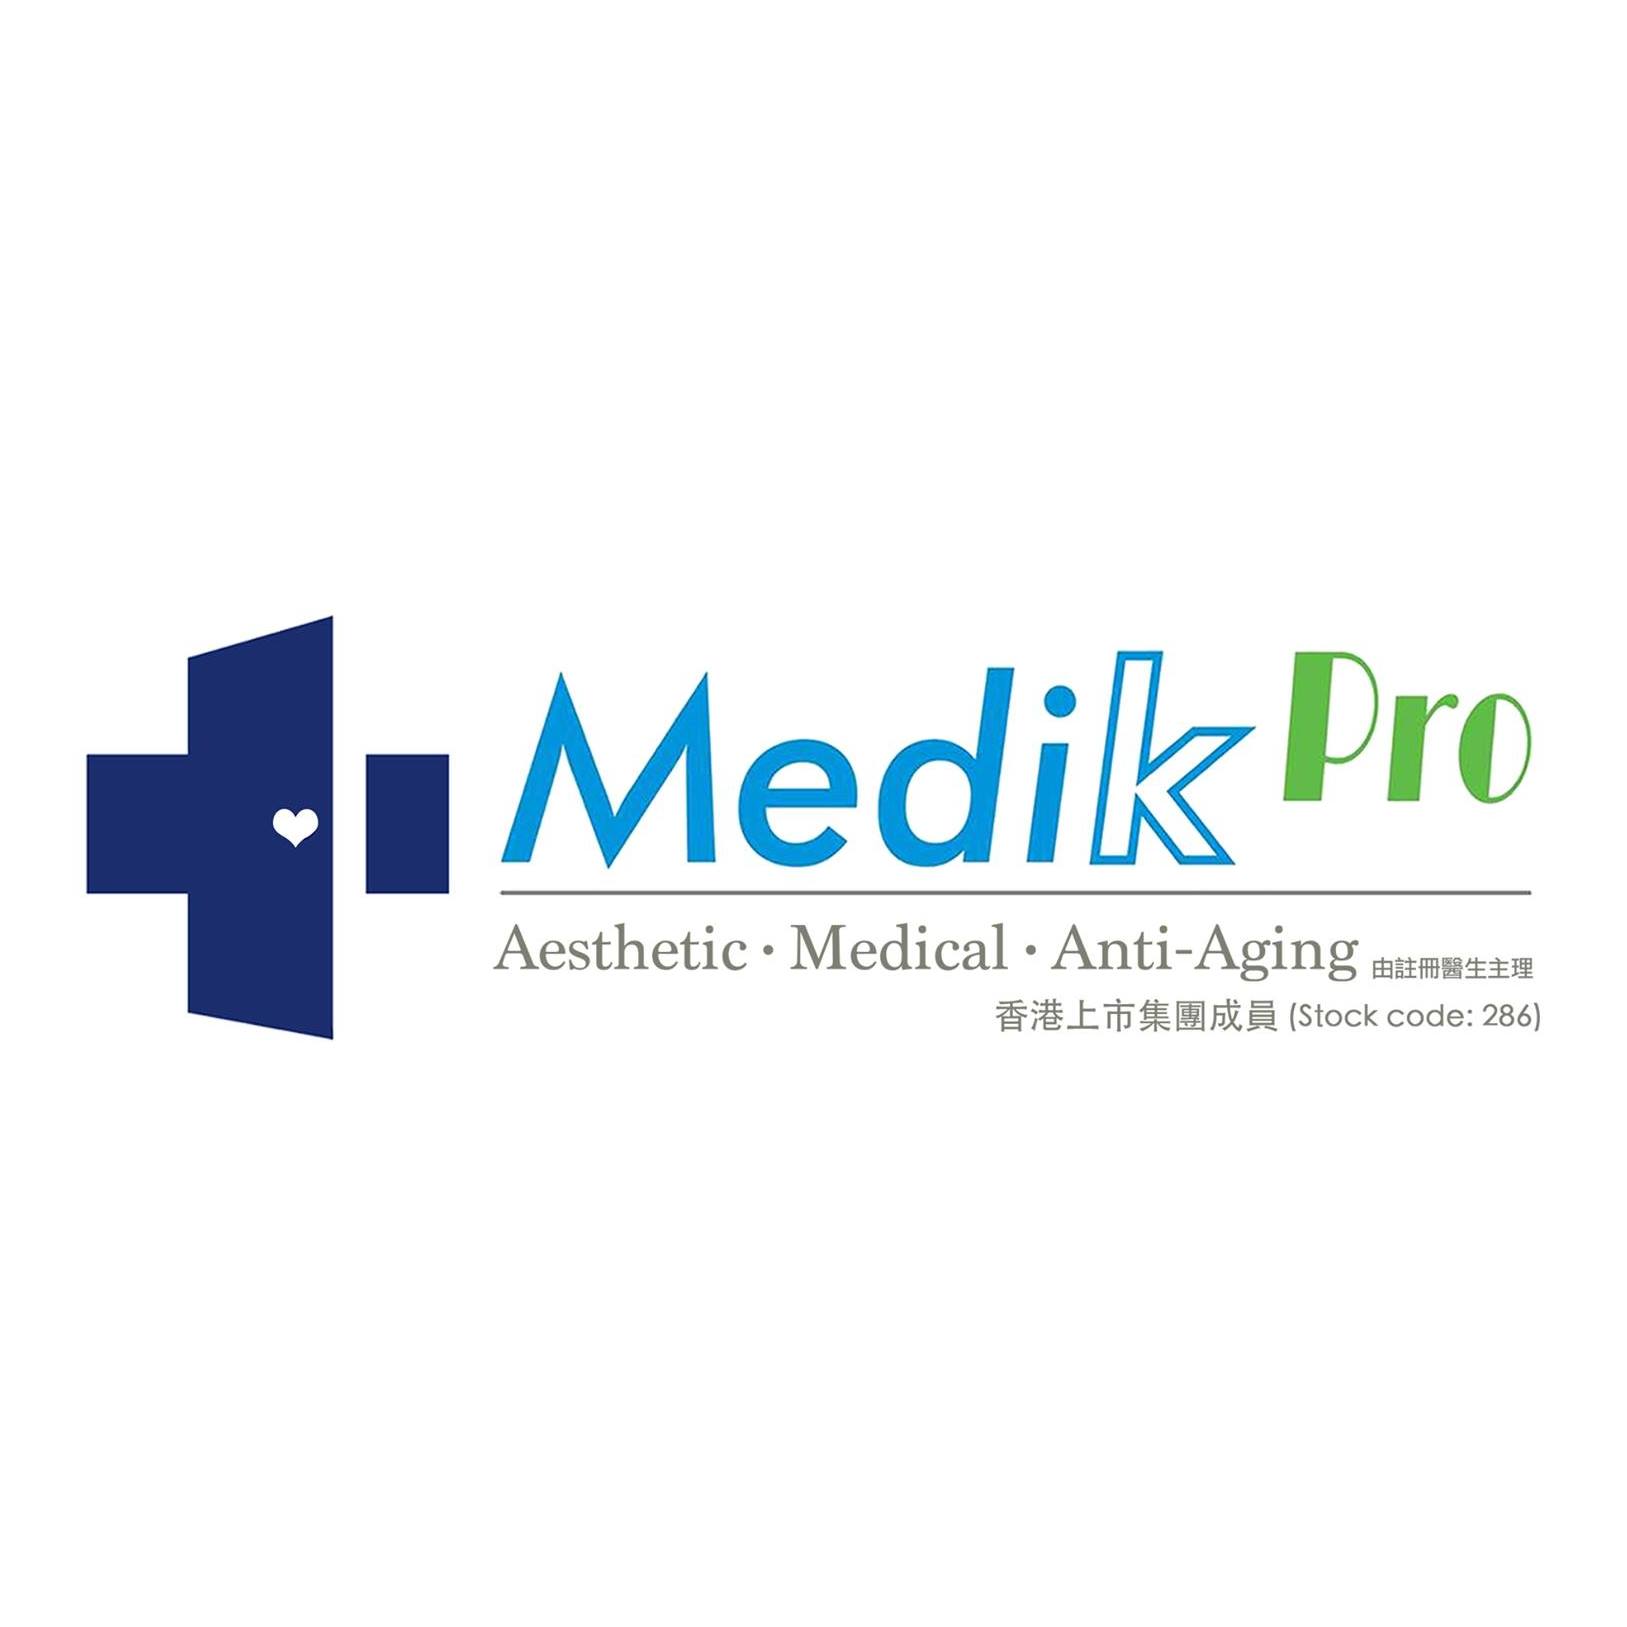 醫學美容: Medik Pro (旺角分店)